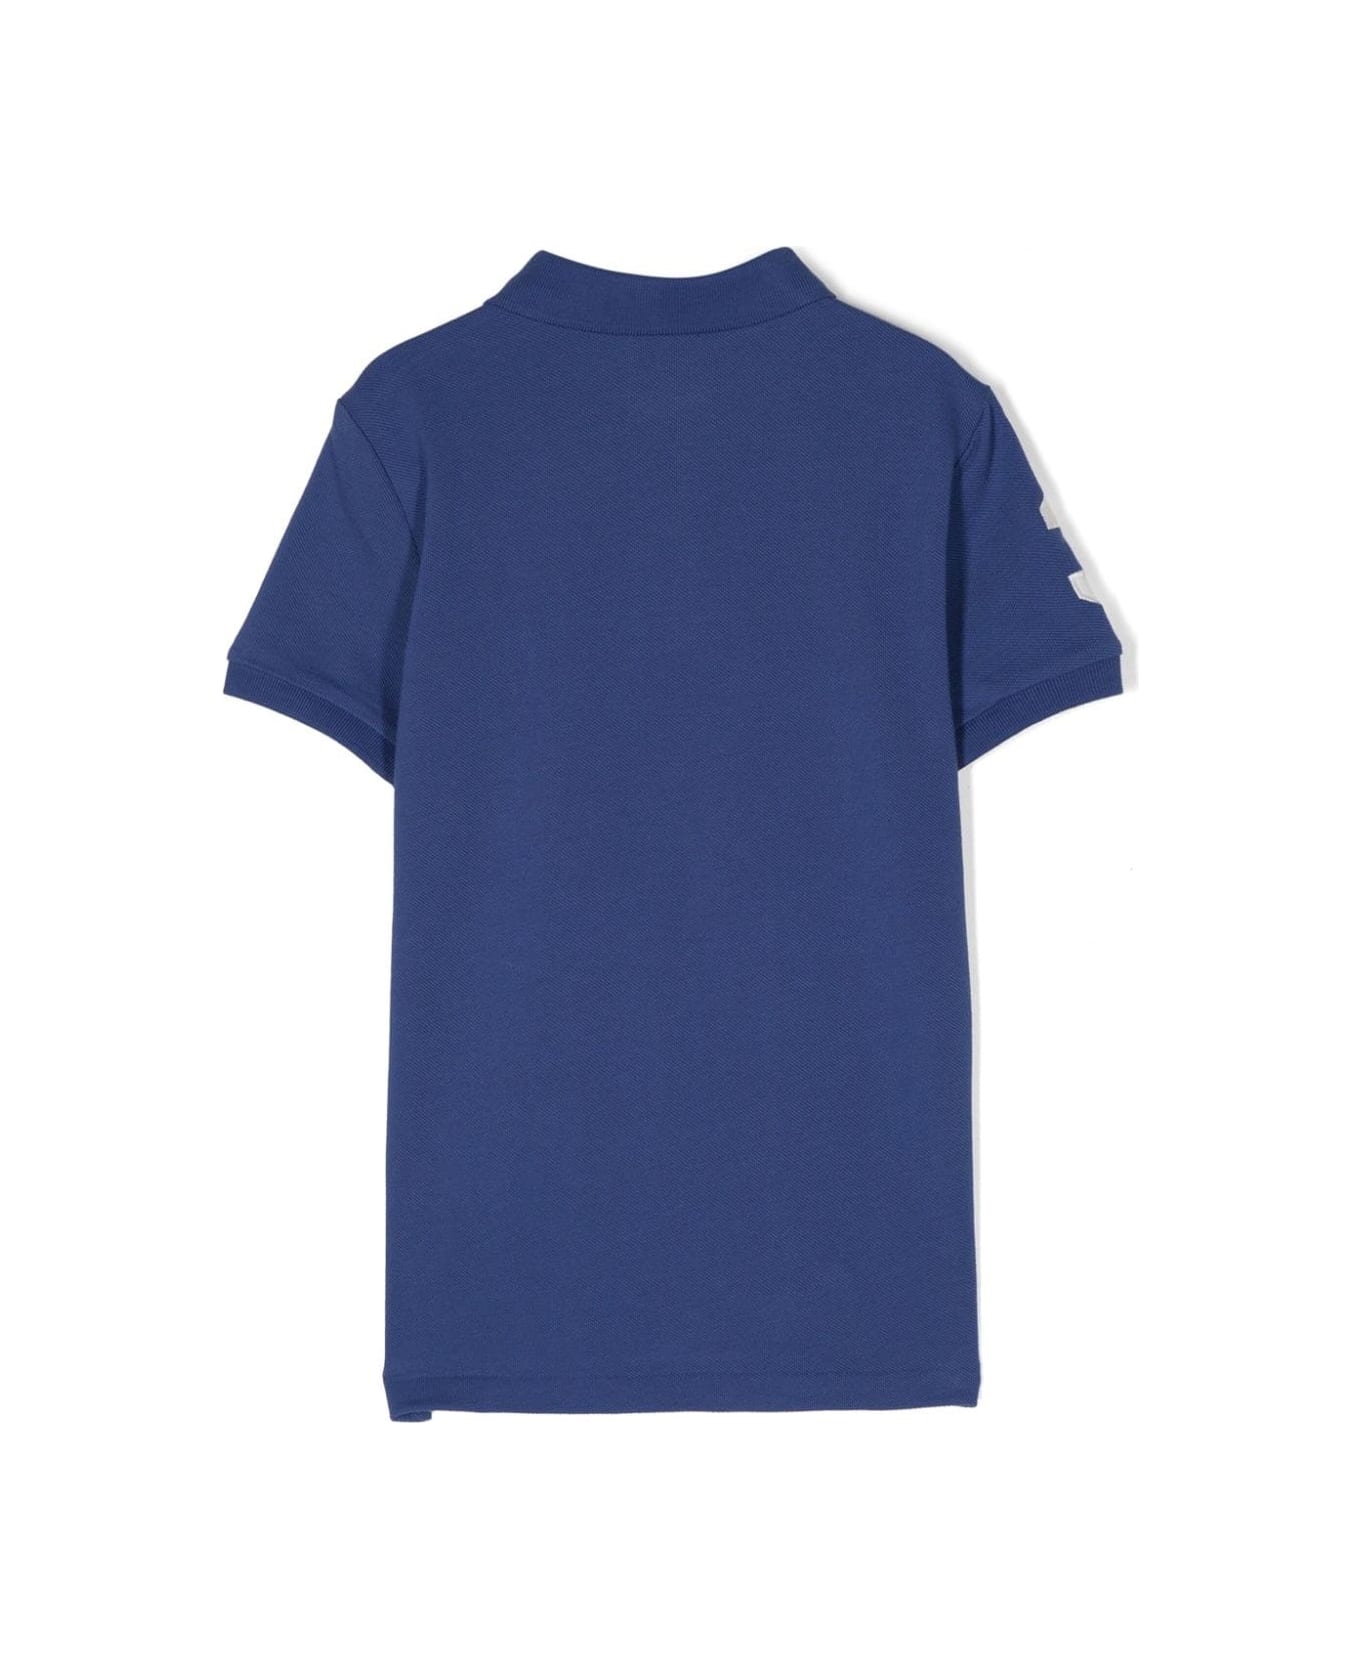 Ralph Lauren Cobalt Blue Polo Shirt With Pony Motif - Blue